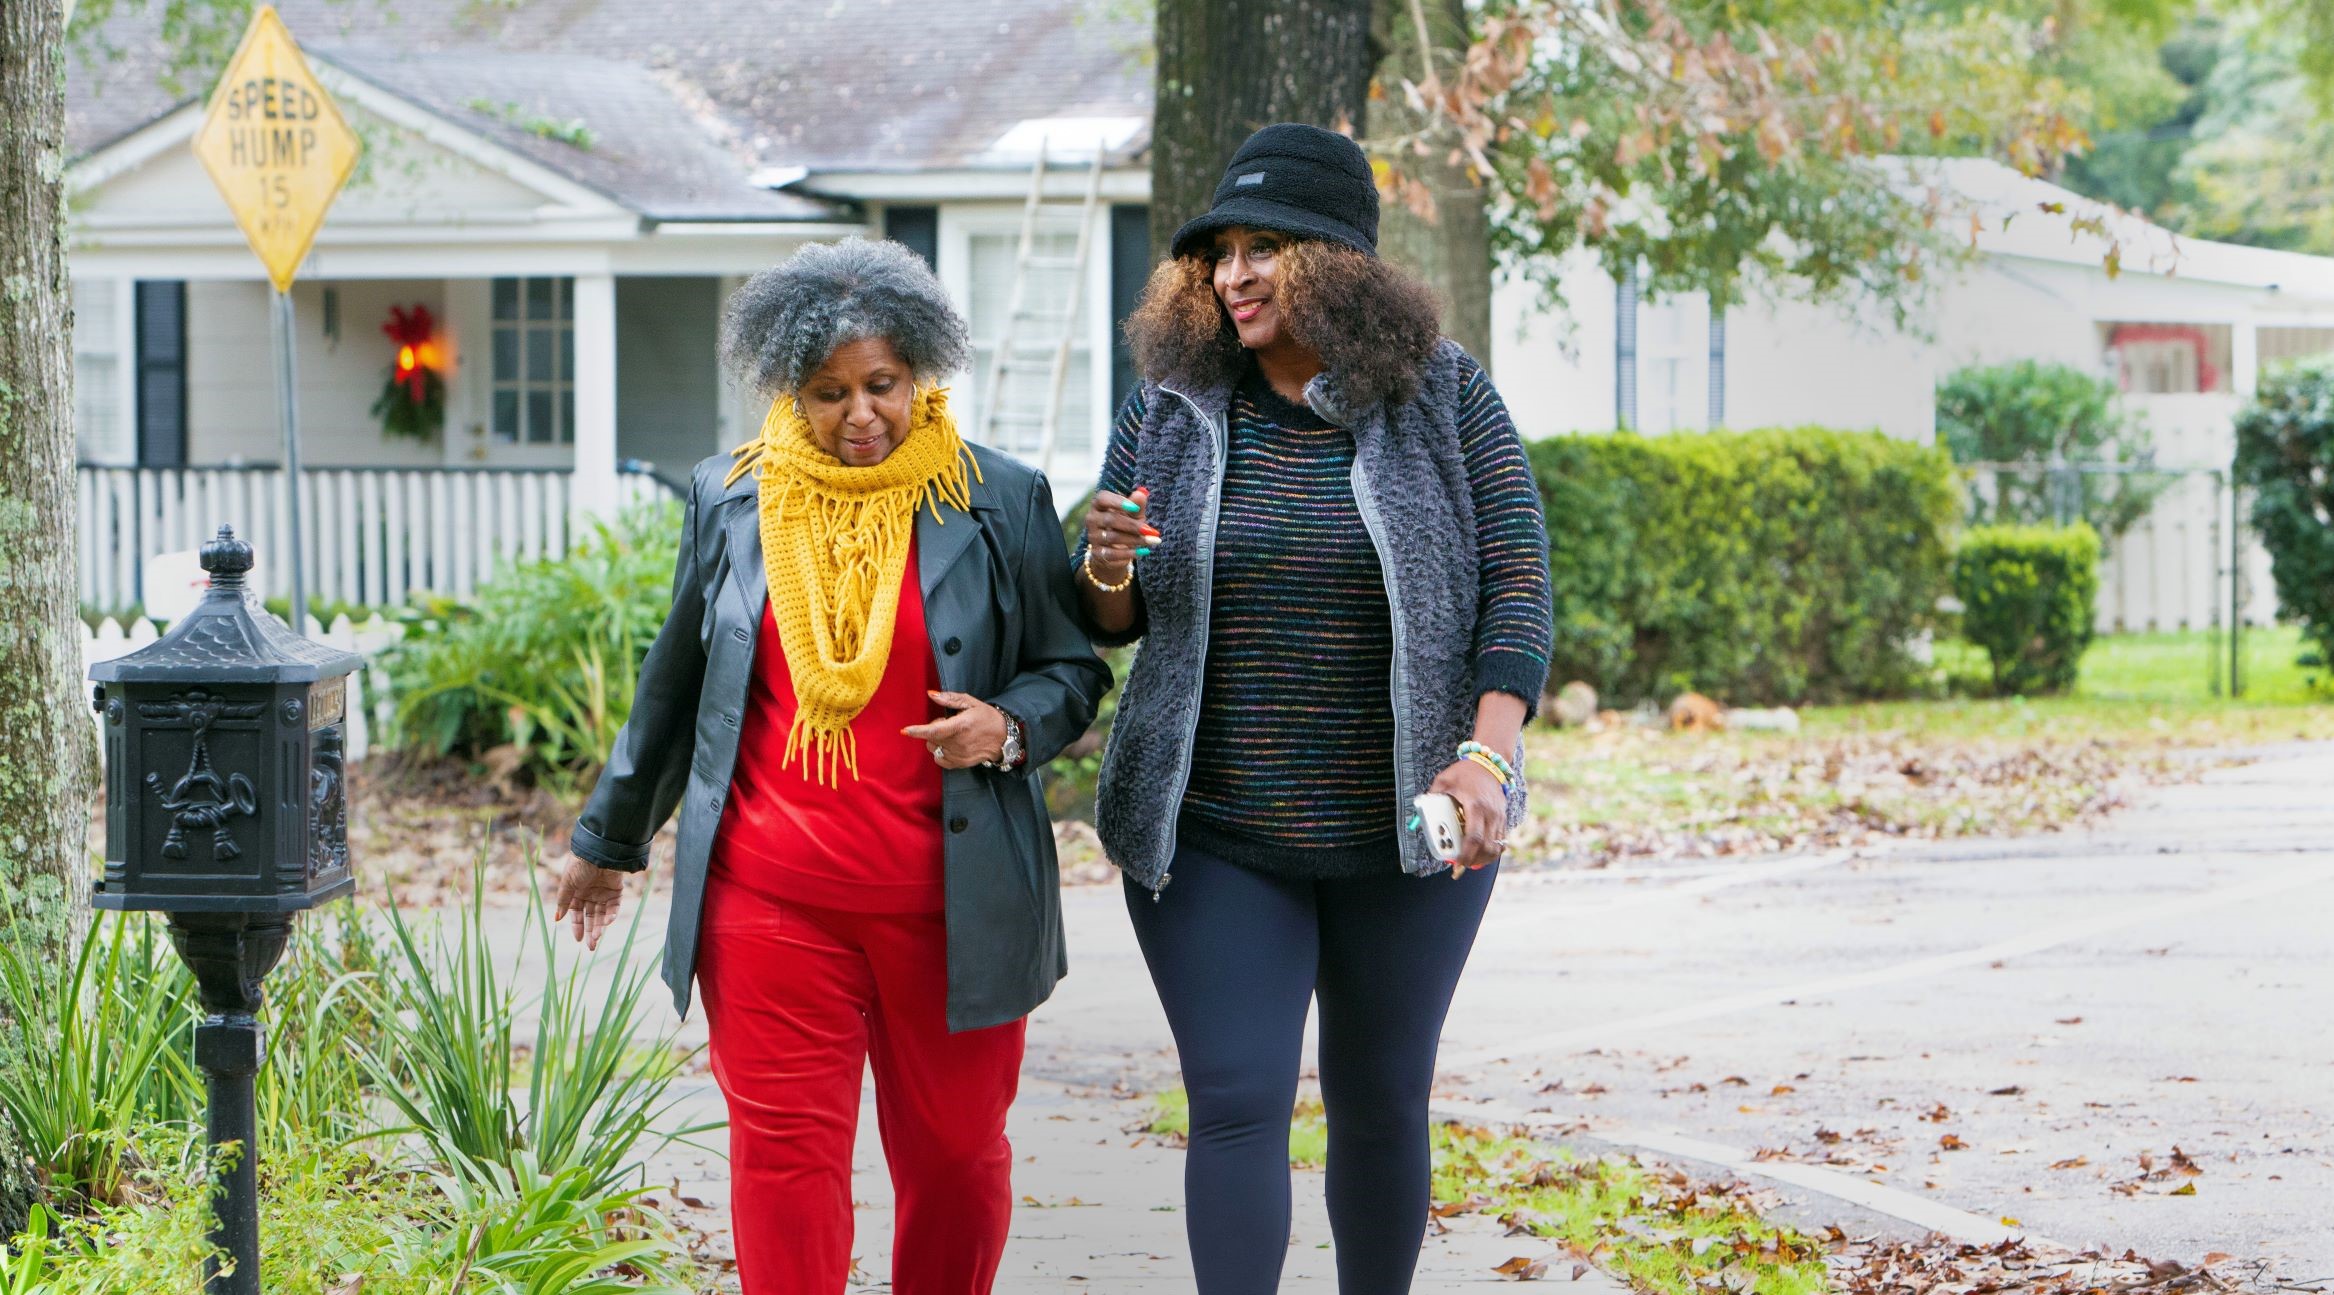 two women walking in a neighborhood. 